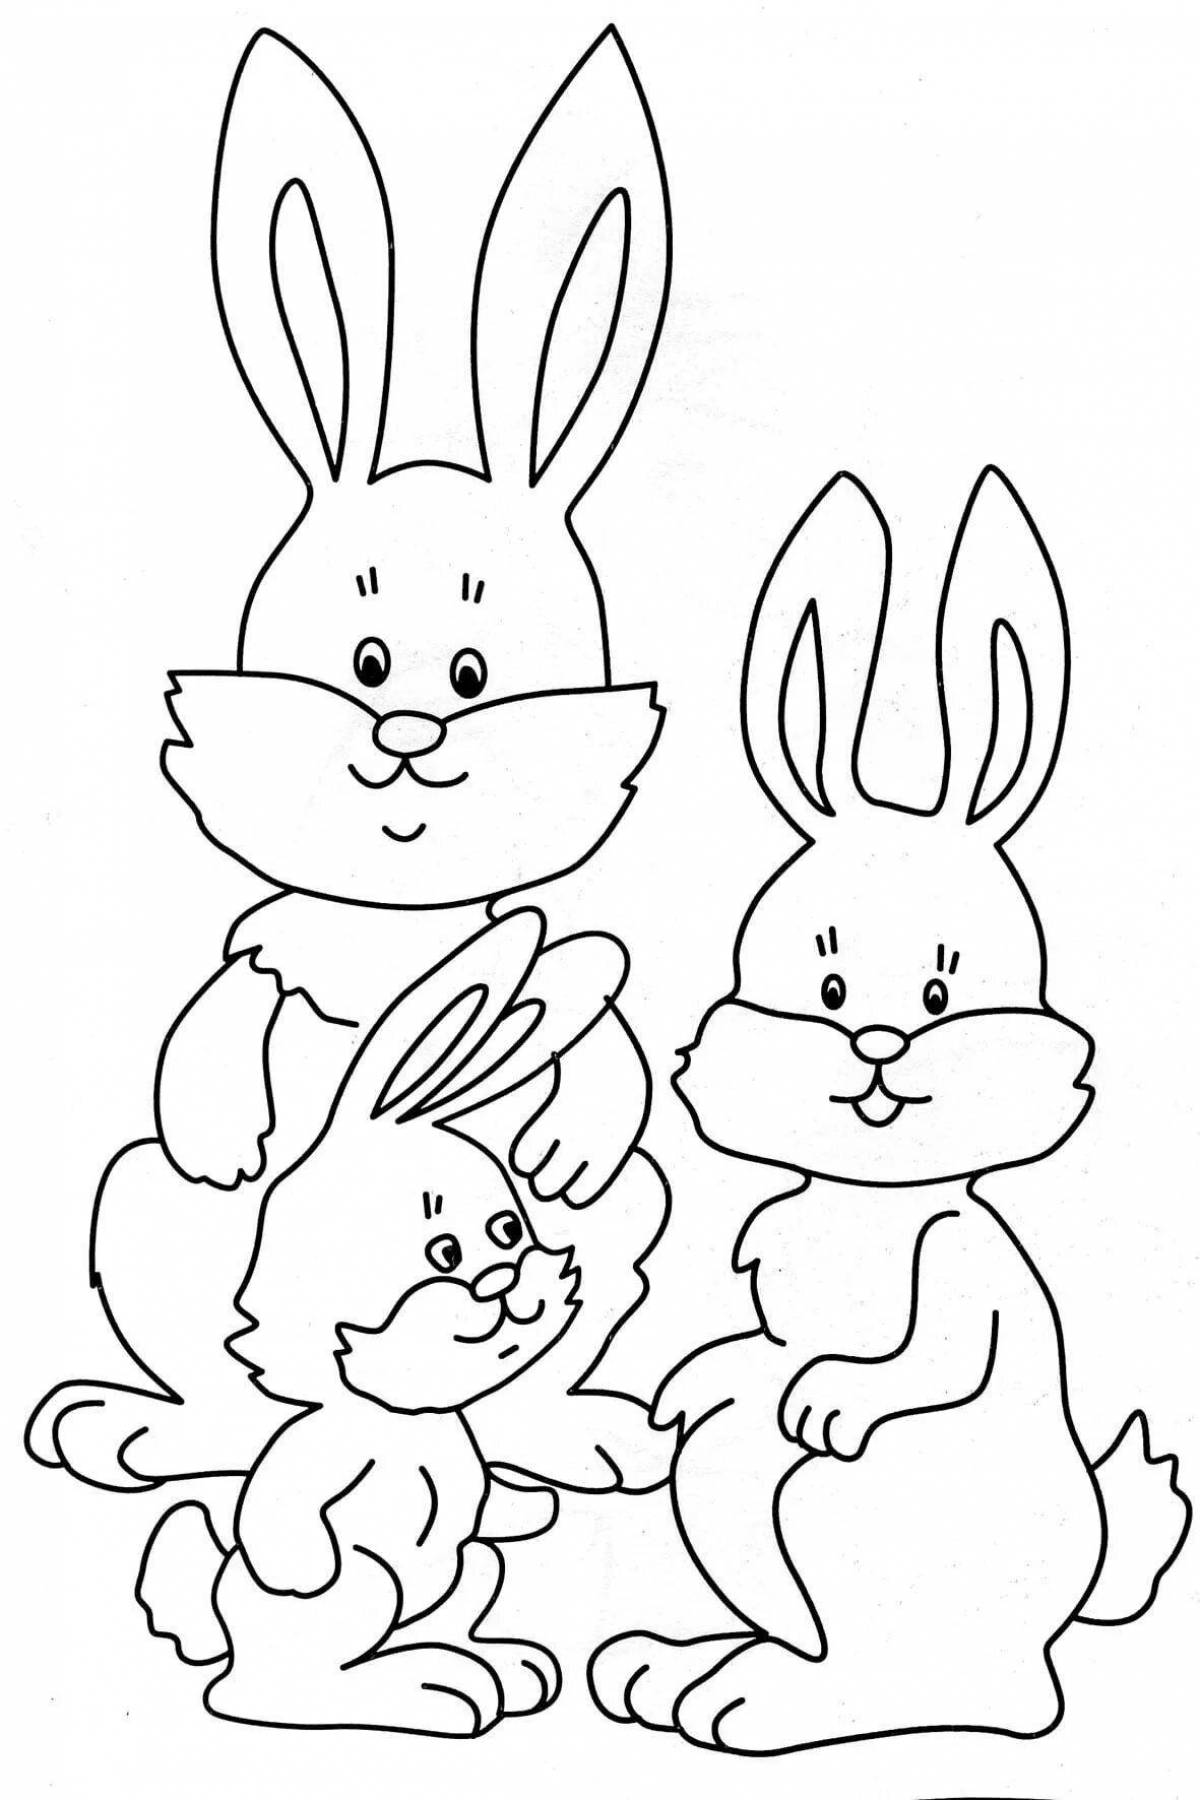 Joyful coloring hare for children